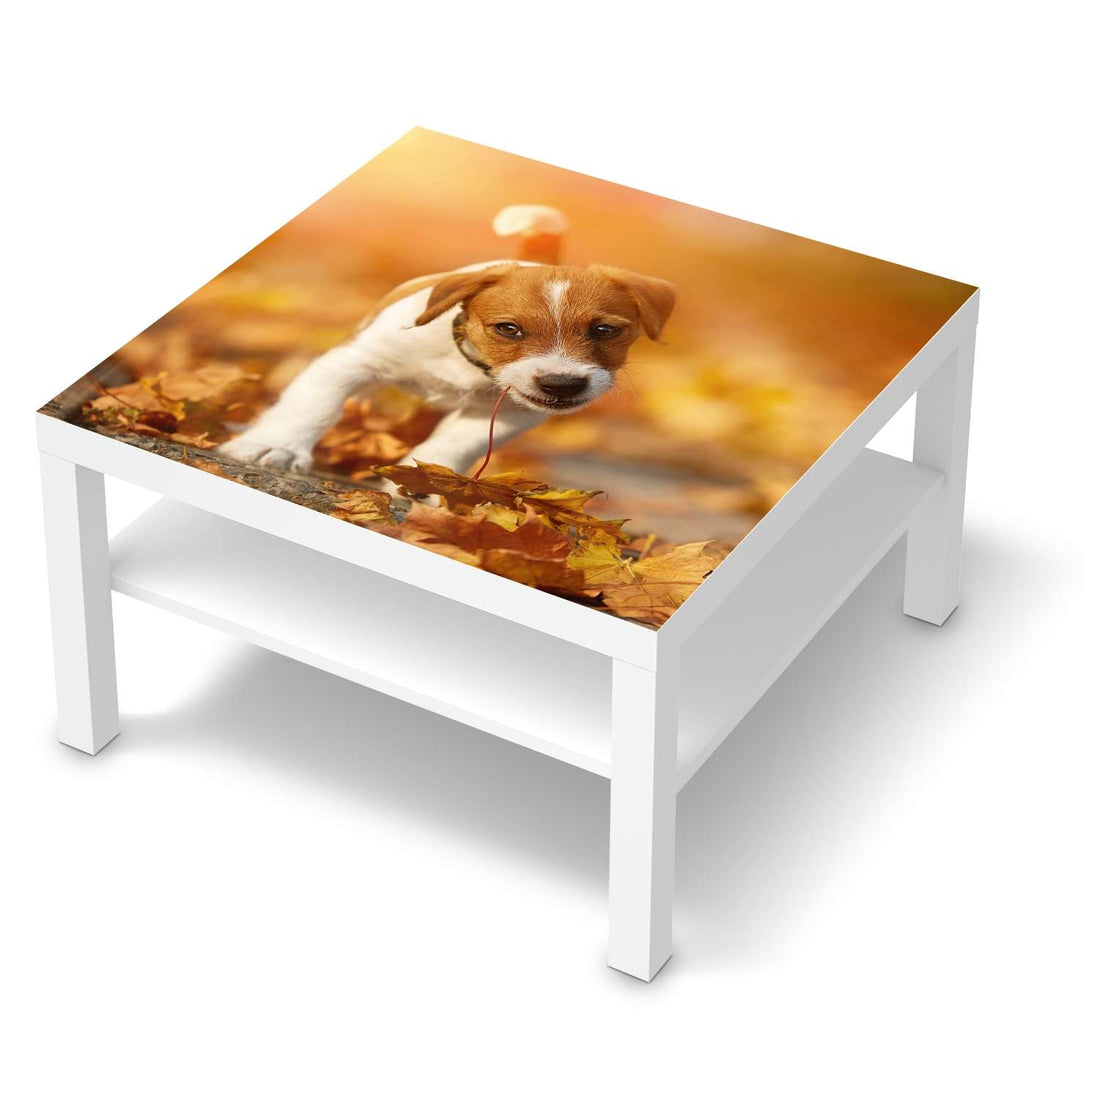 Selbstklebende Folie Jack the Puppy - IKEA Lack Tisch 78x78 cm - weiss